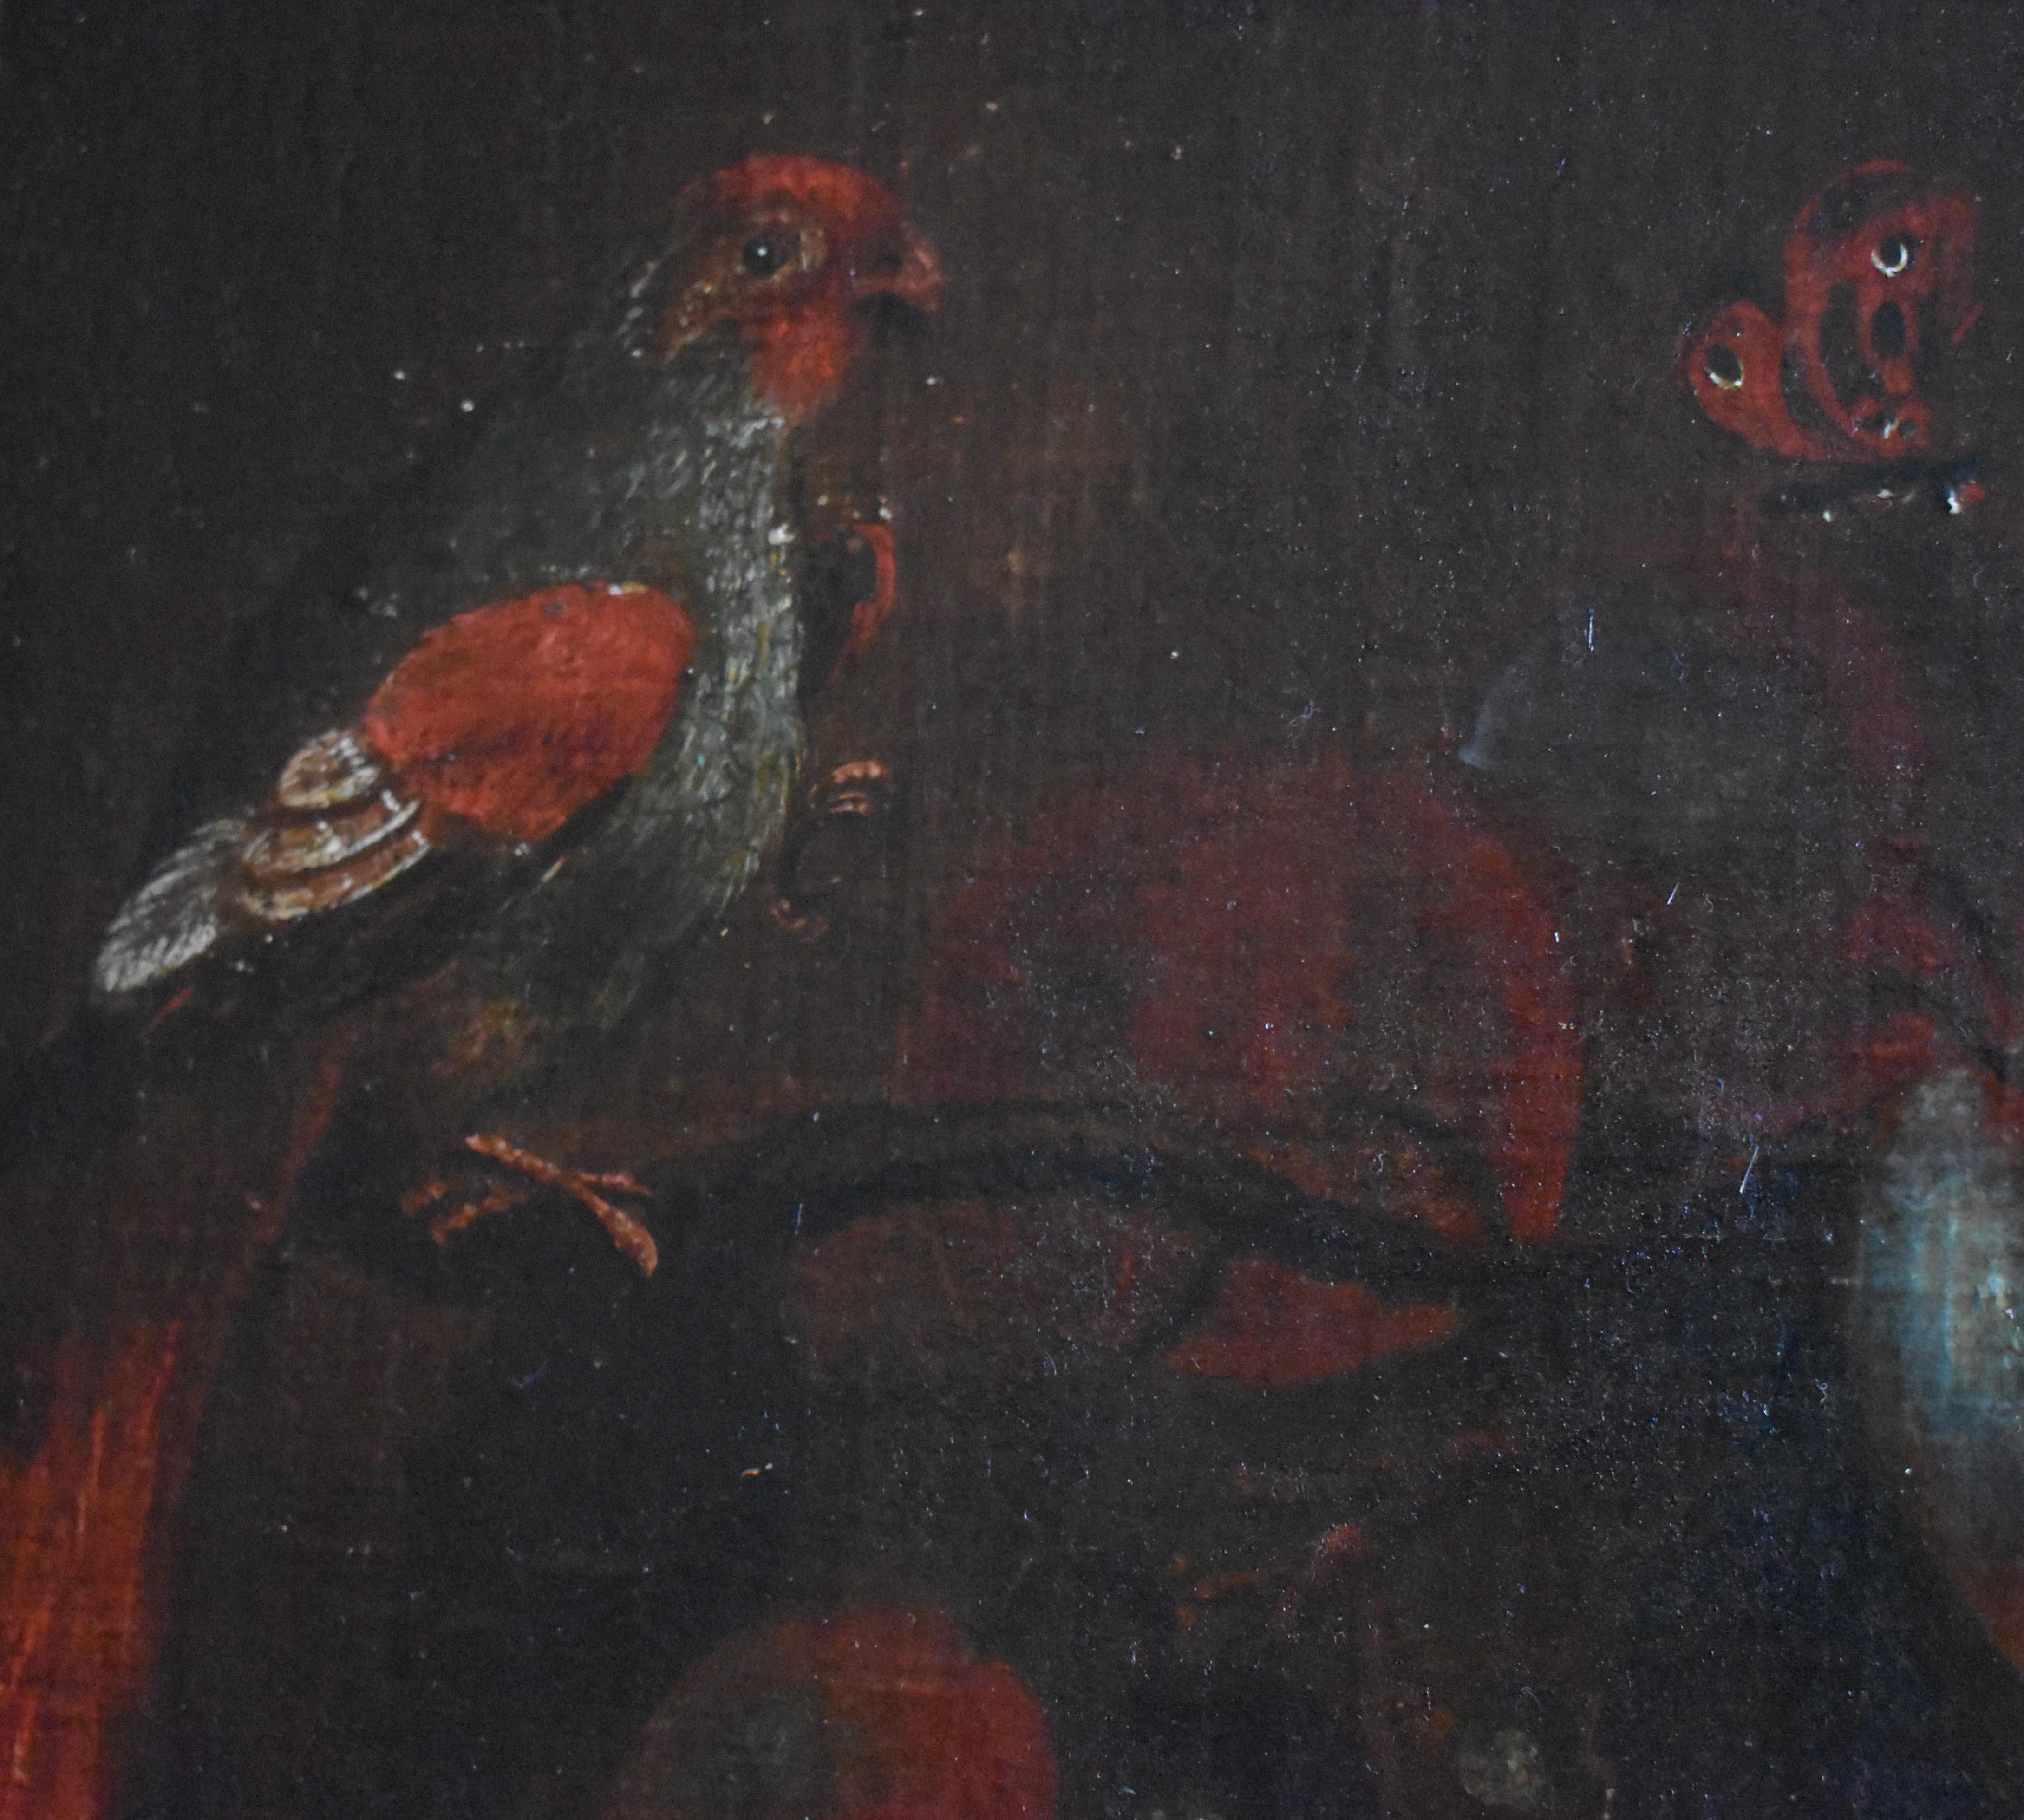 Suiveur d'Adriaen Coorte (1665-1707) Nature morte du 18e siècle c1795

Une somptueuse nature morte représentant des pêches, des raisins, des prunes, des oiseaux exotiques et des papillons dans le style de  Adriaen Coorte. Elle est peinte à l'huile